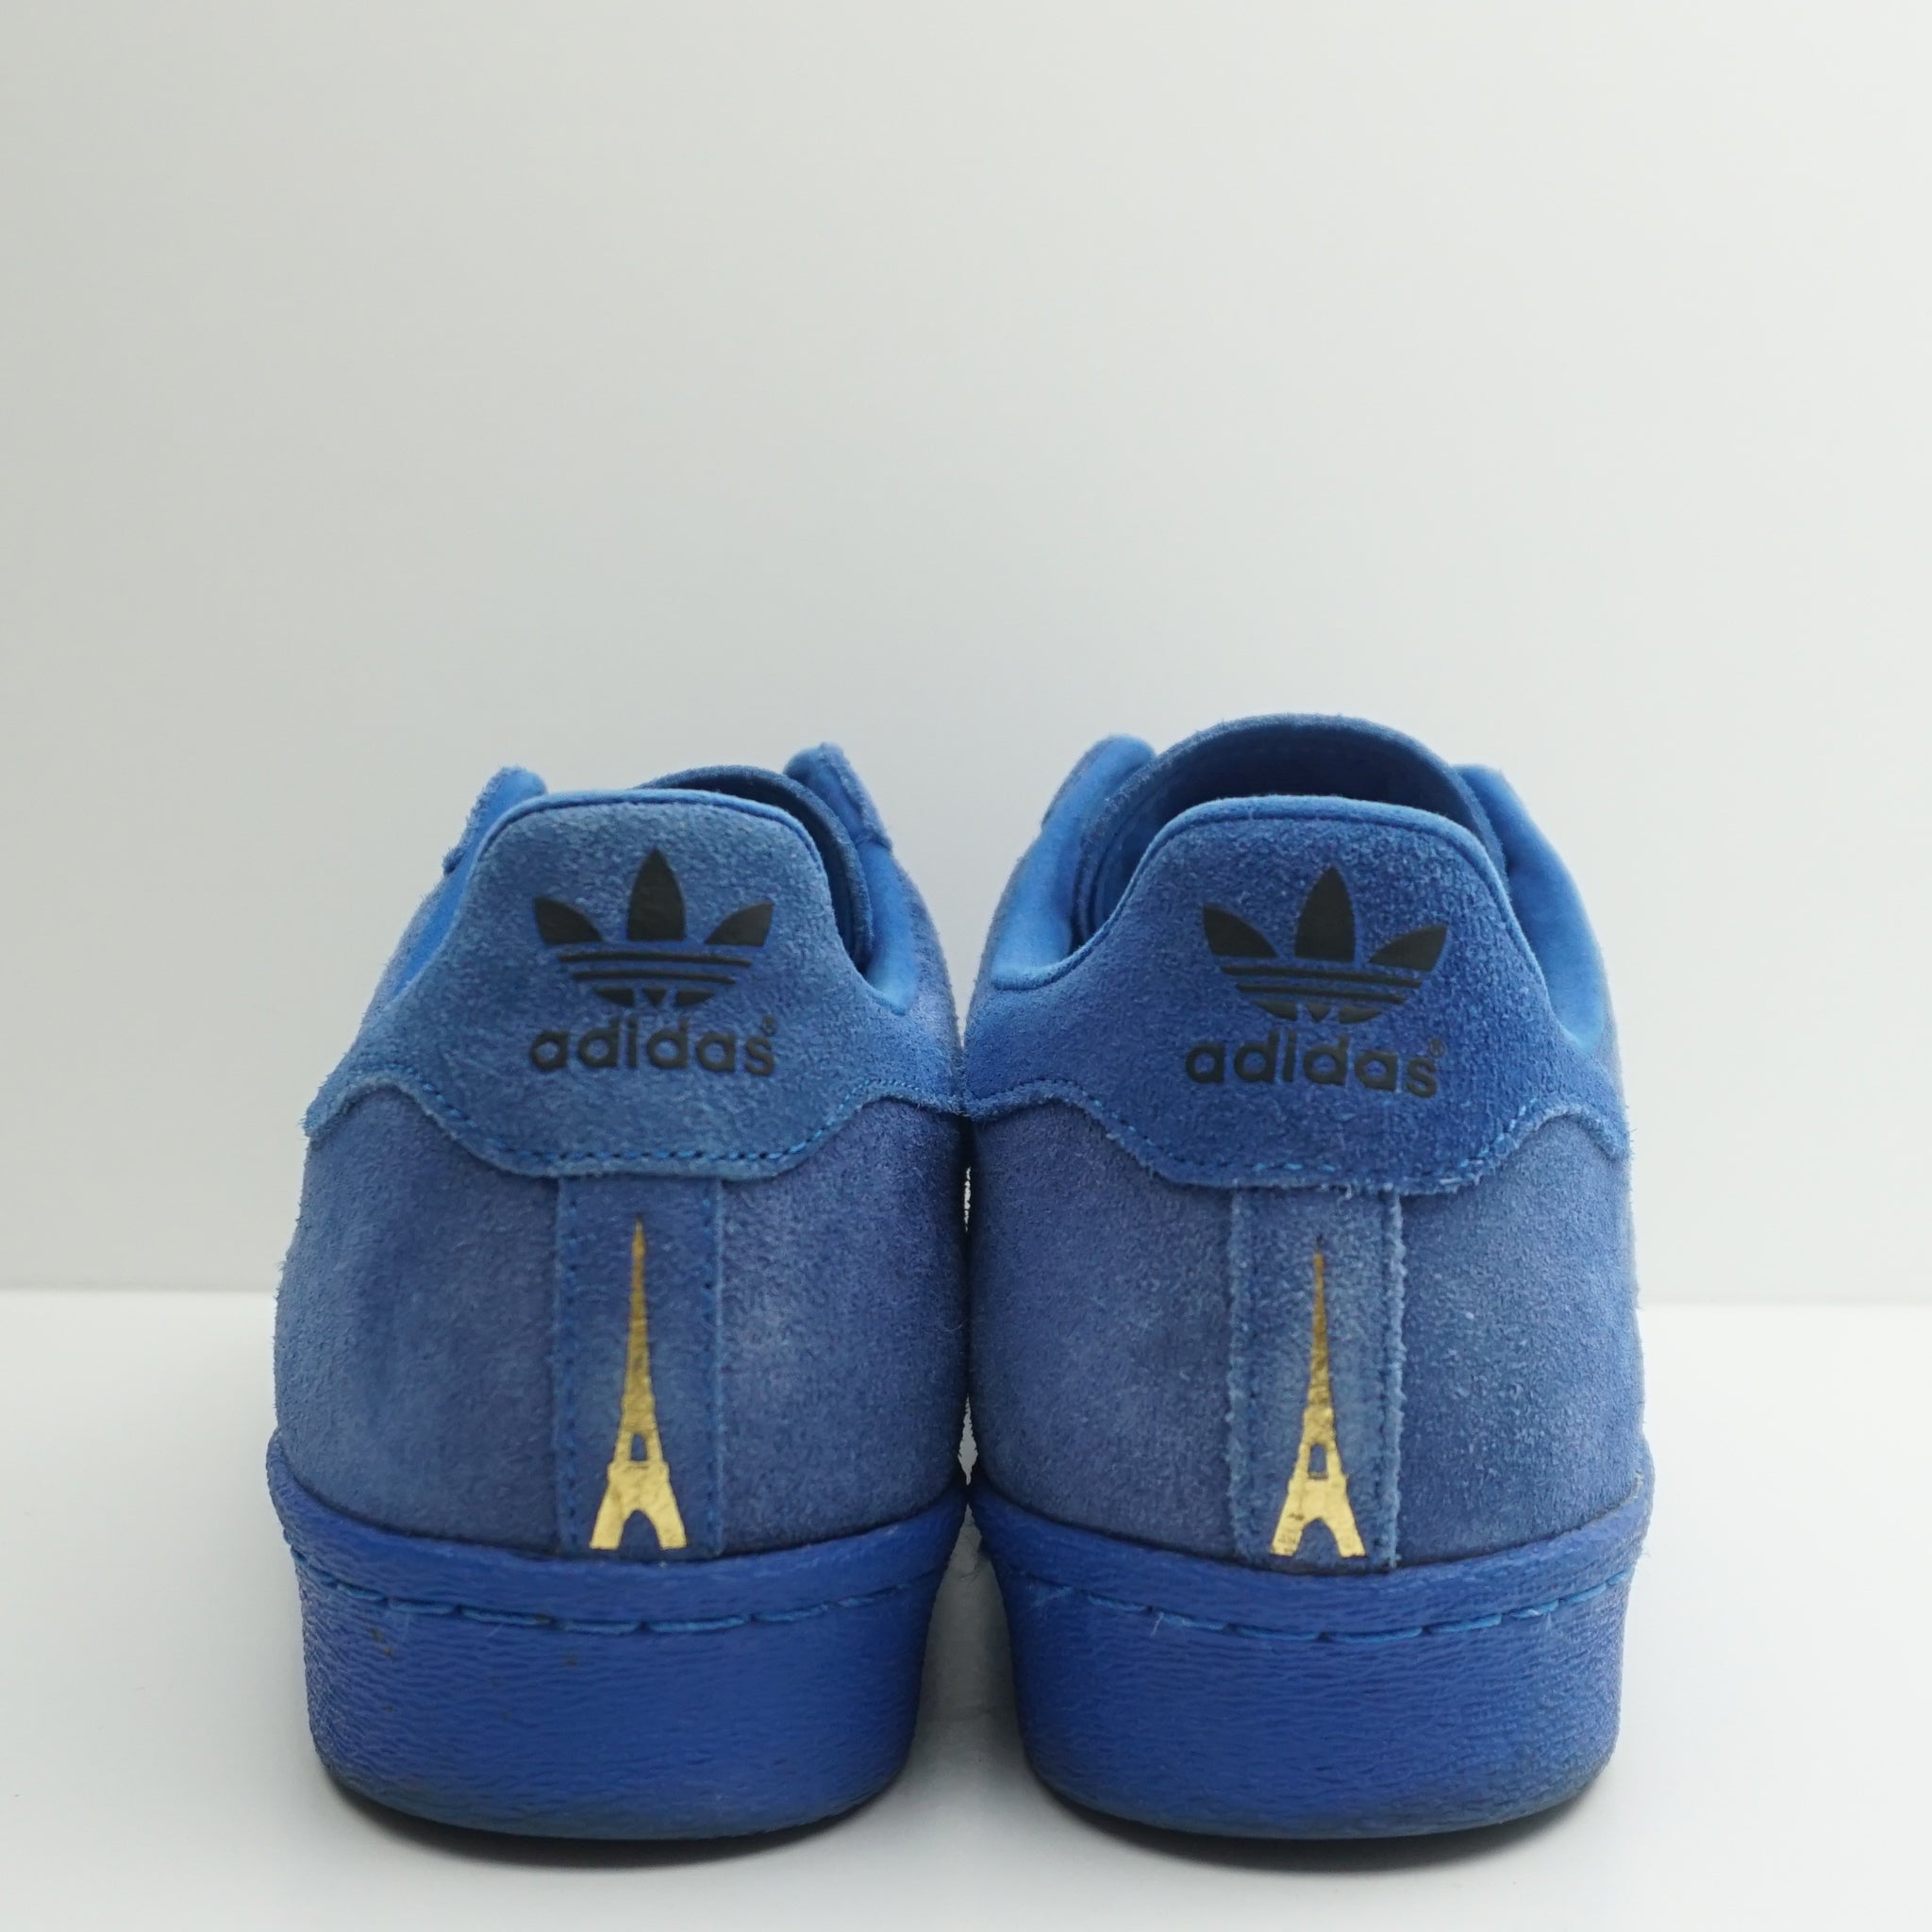 Adidas Superstar 80s City Series Paris